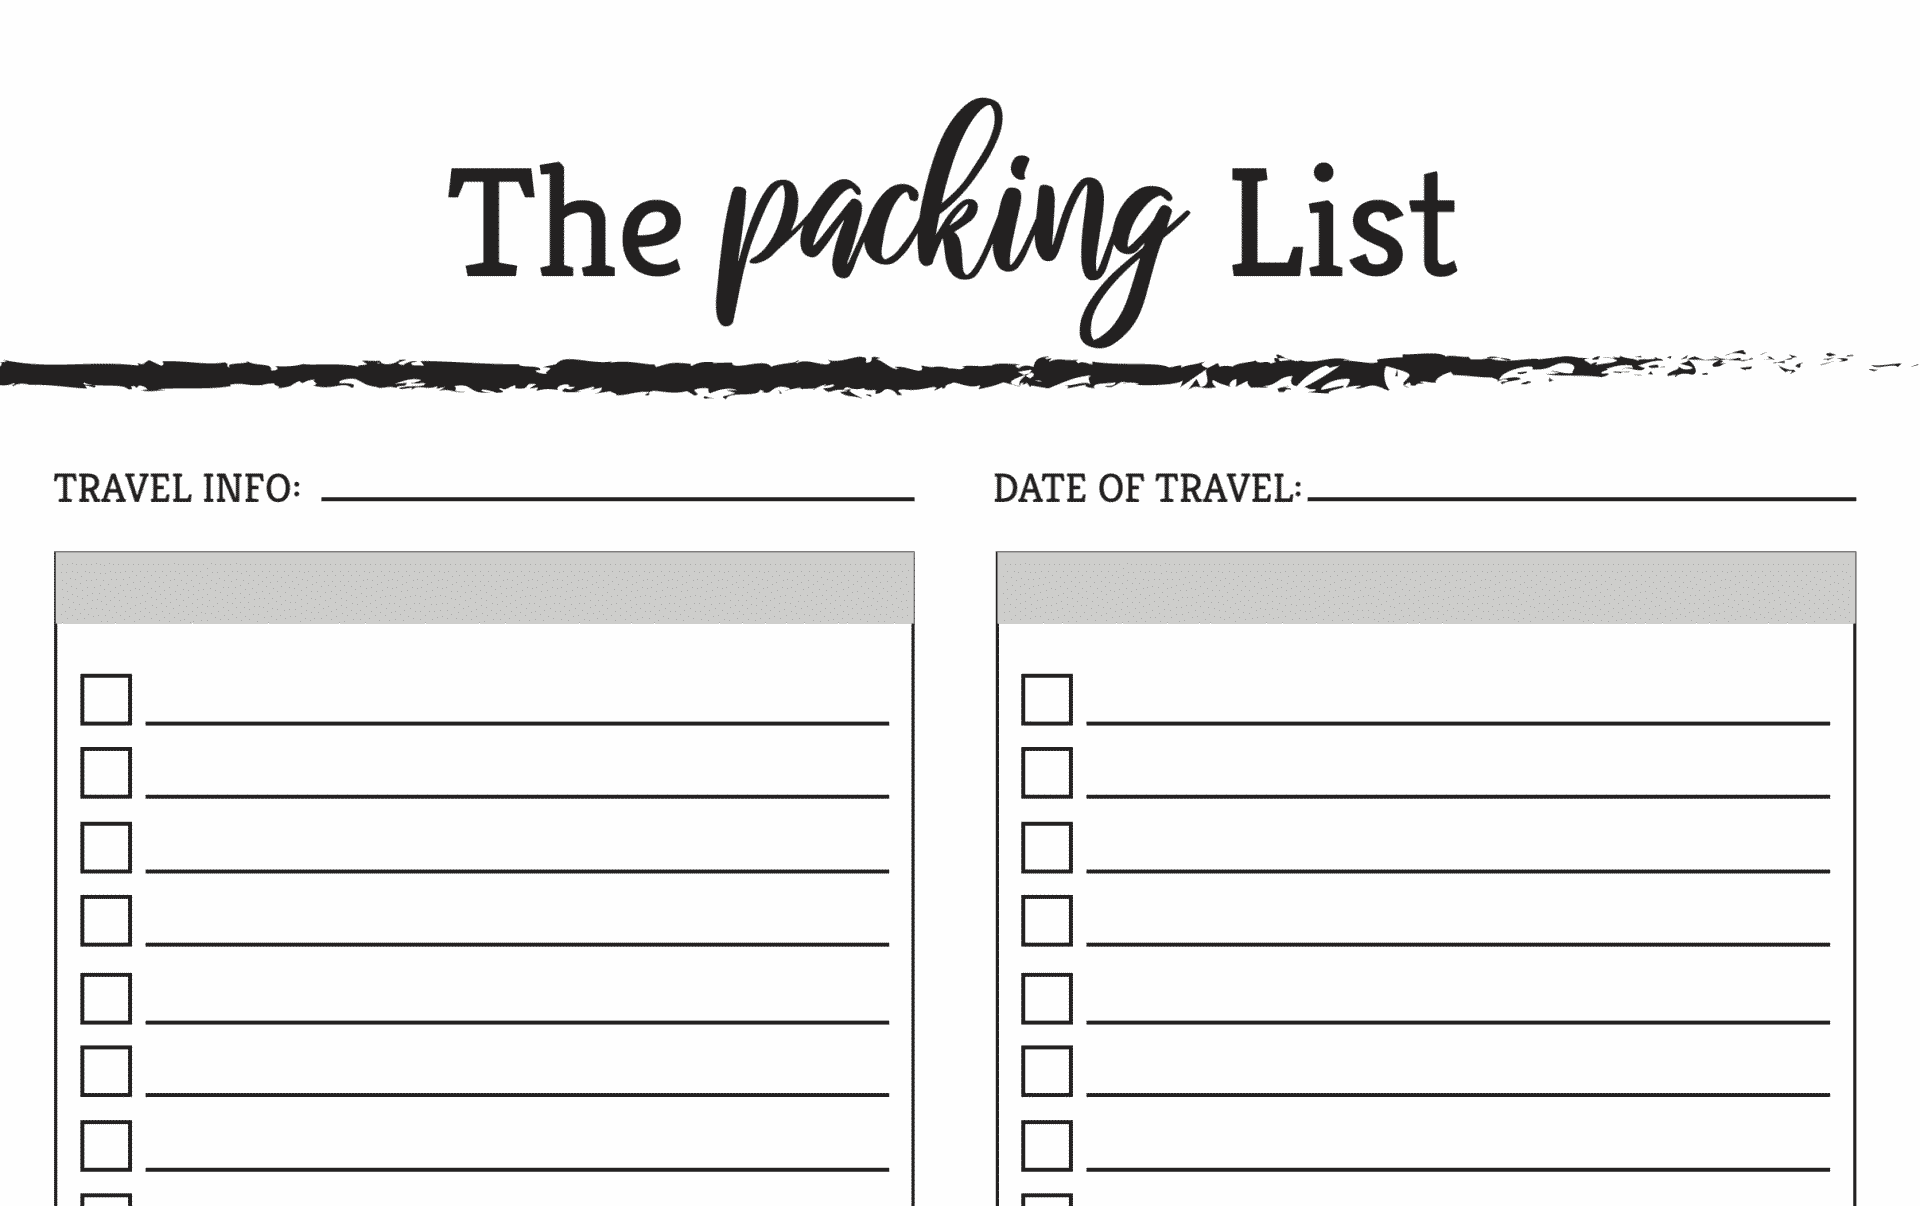 Packing List là chứng từ không thể thiếu trong bộ hồ sơ thủ tục hải quan